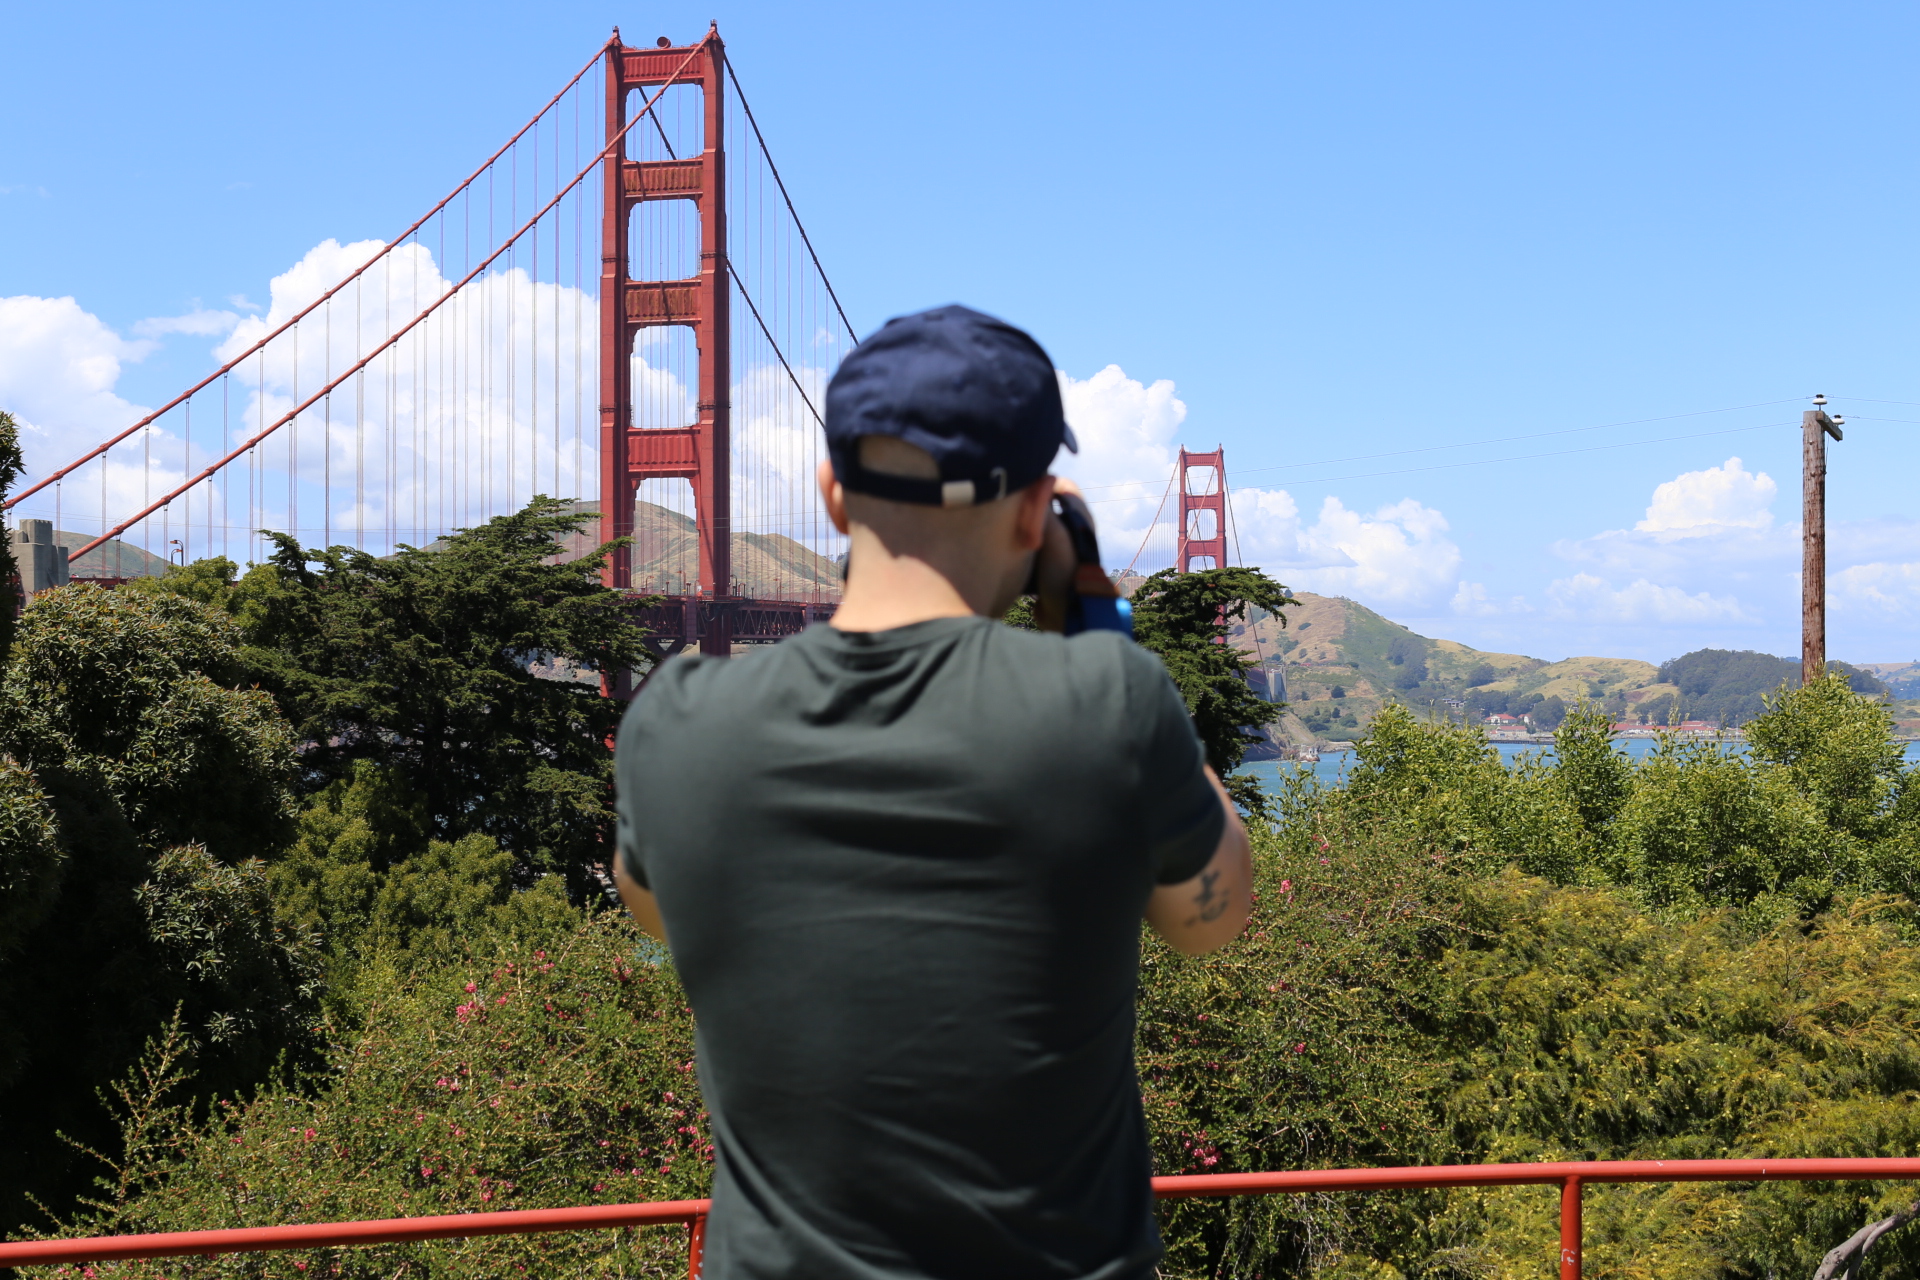 Joe's Daily Golden Gate Bridge